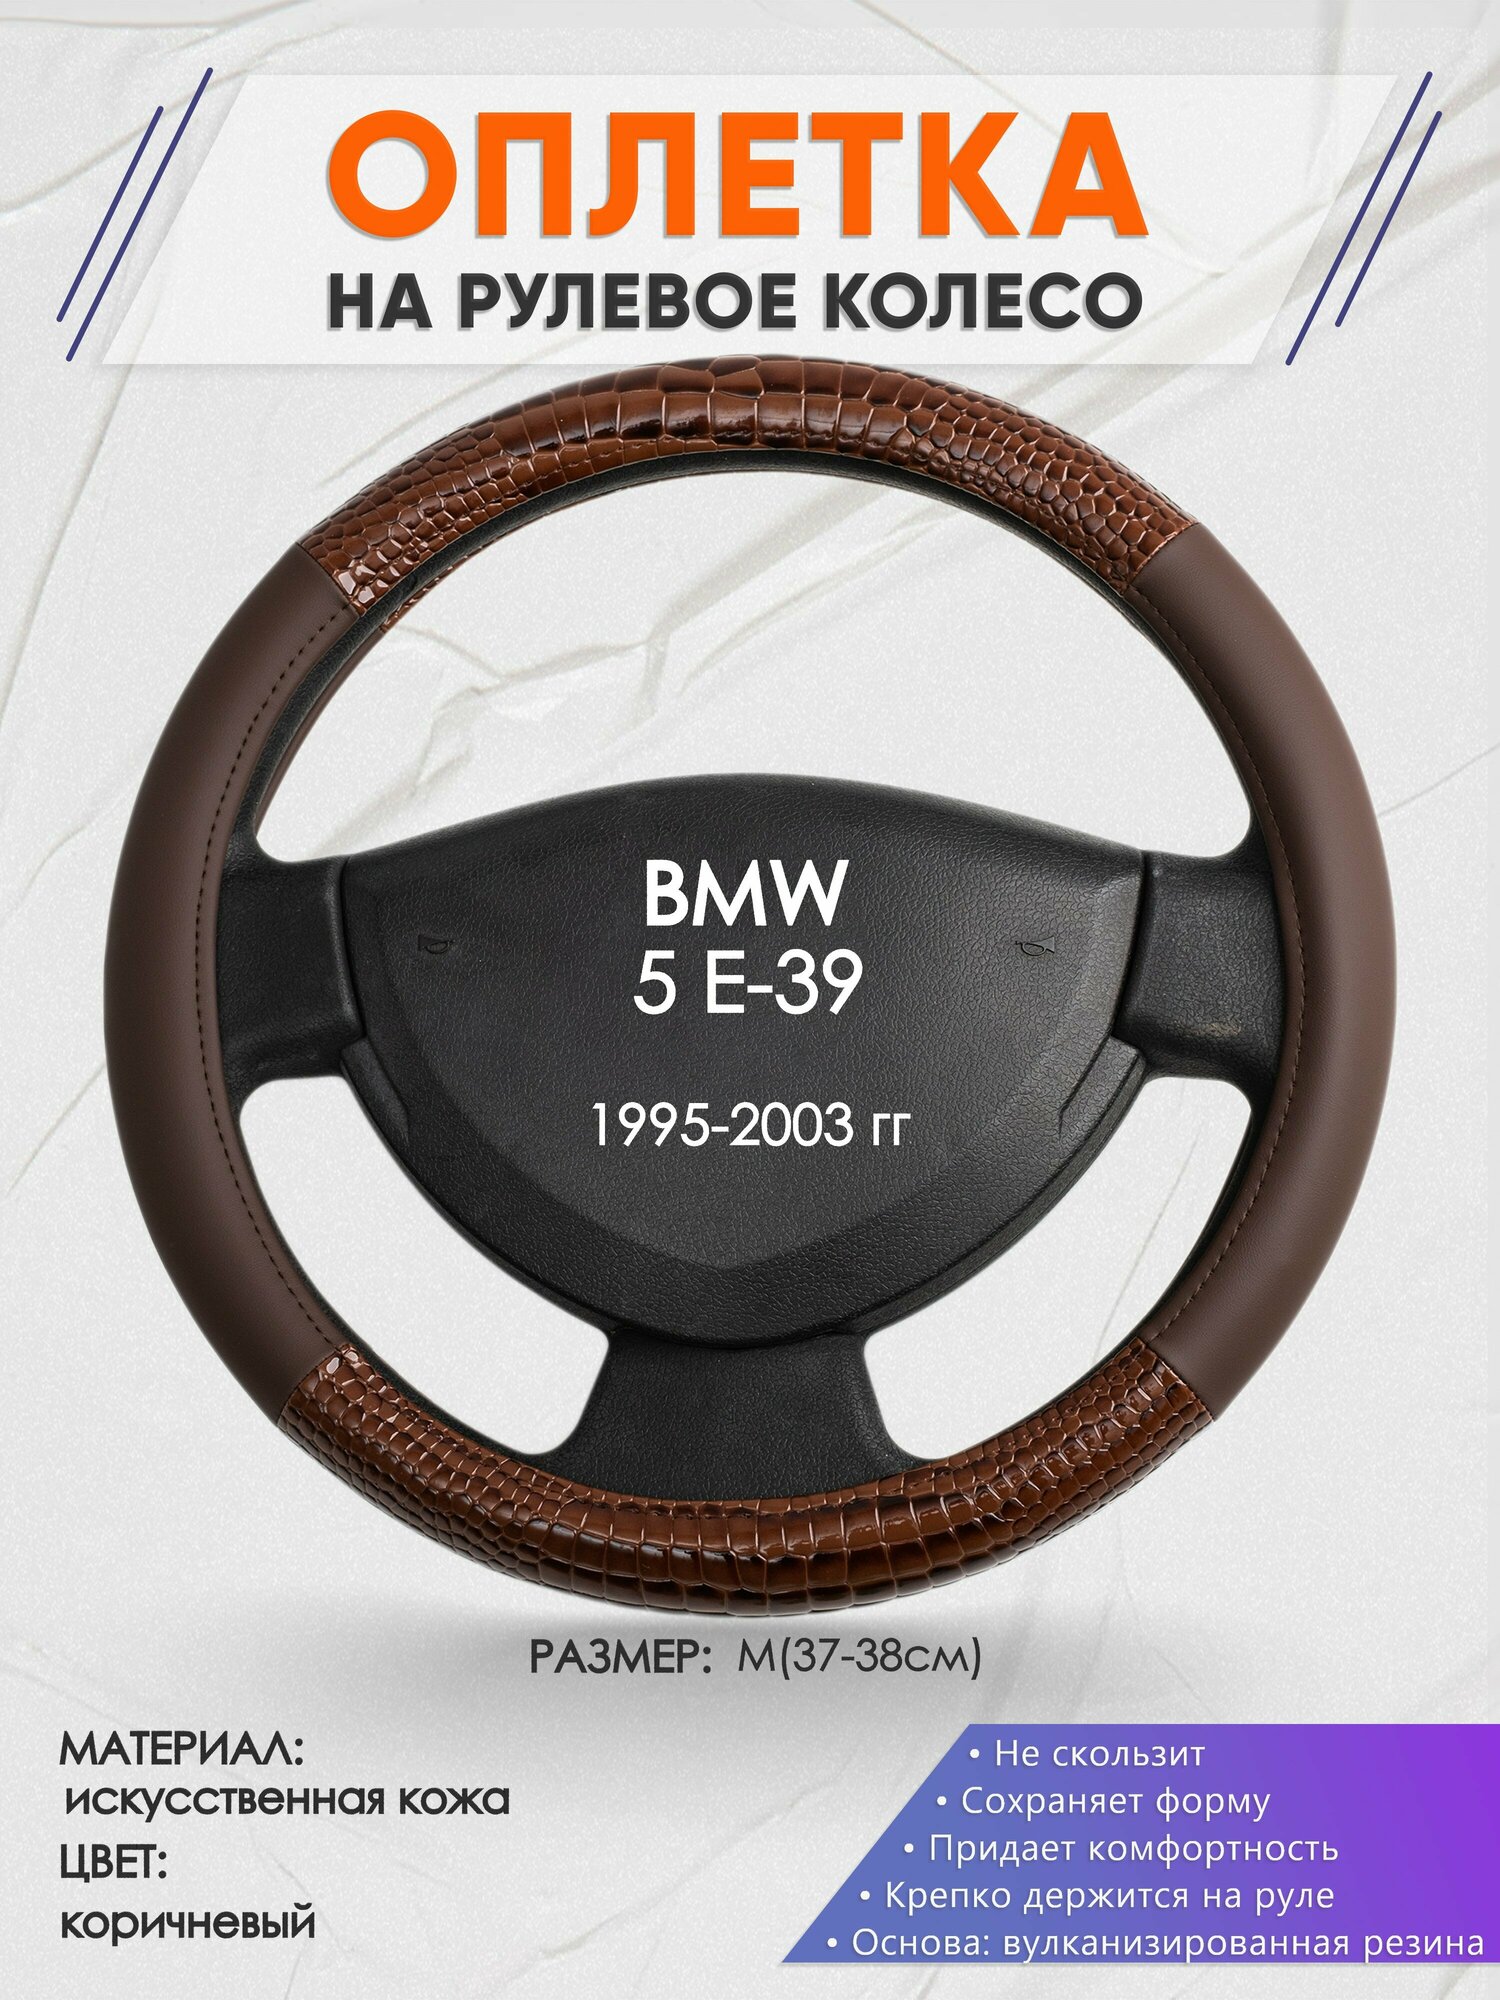 Оплетка на руль для BMW 5 E-39(БМВ 5 серии е39) 1995-2003, M(37-38см), Искусственная кожа 85